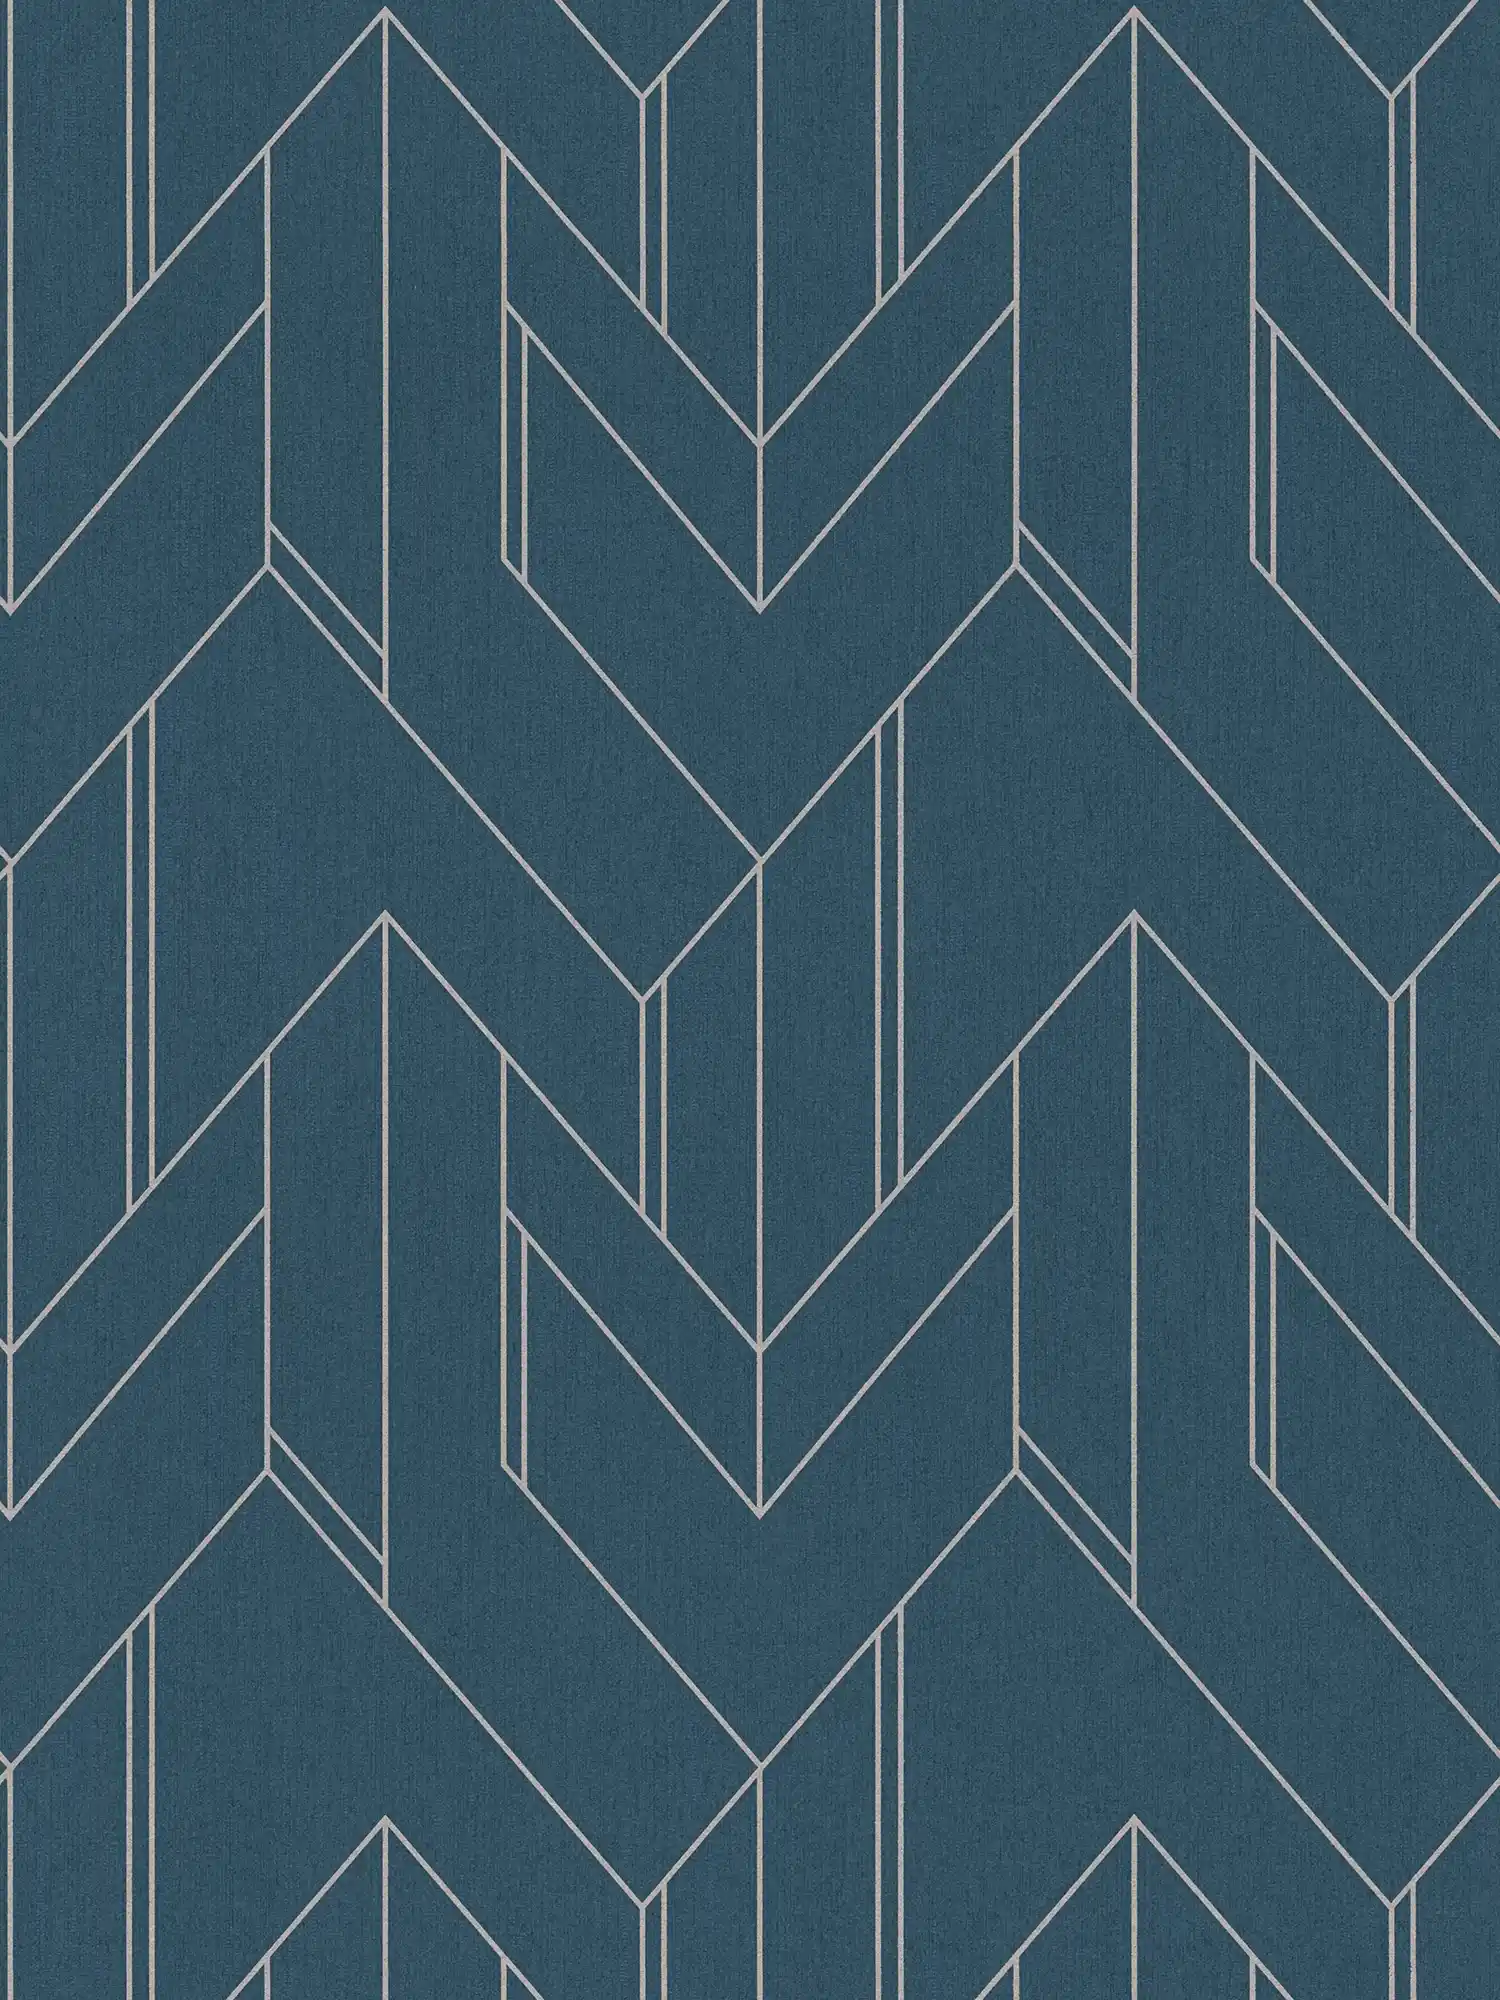 Donkerblauw behang met zilver grafisch patroon & glanzend effect - Blauw, Metallic
